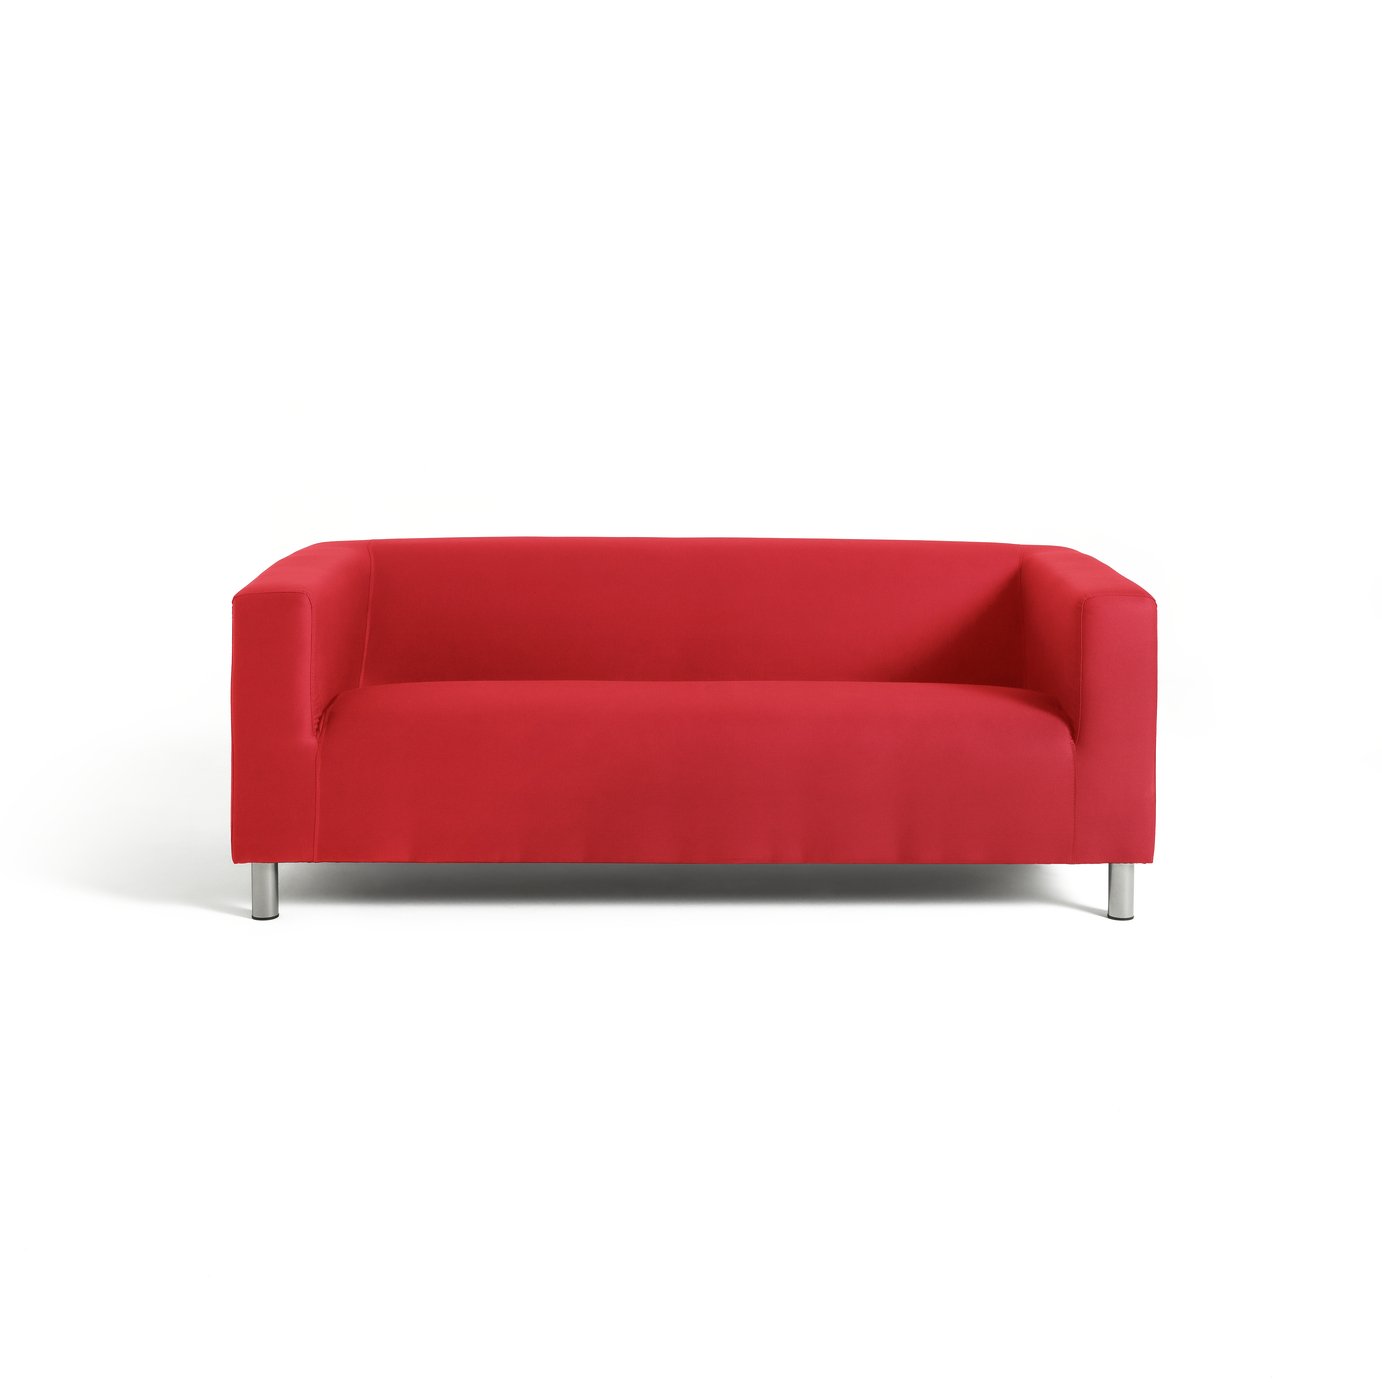 Argos Home Moda 3 Seater Fabric Sofa Review